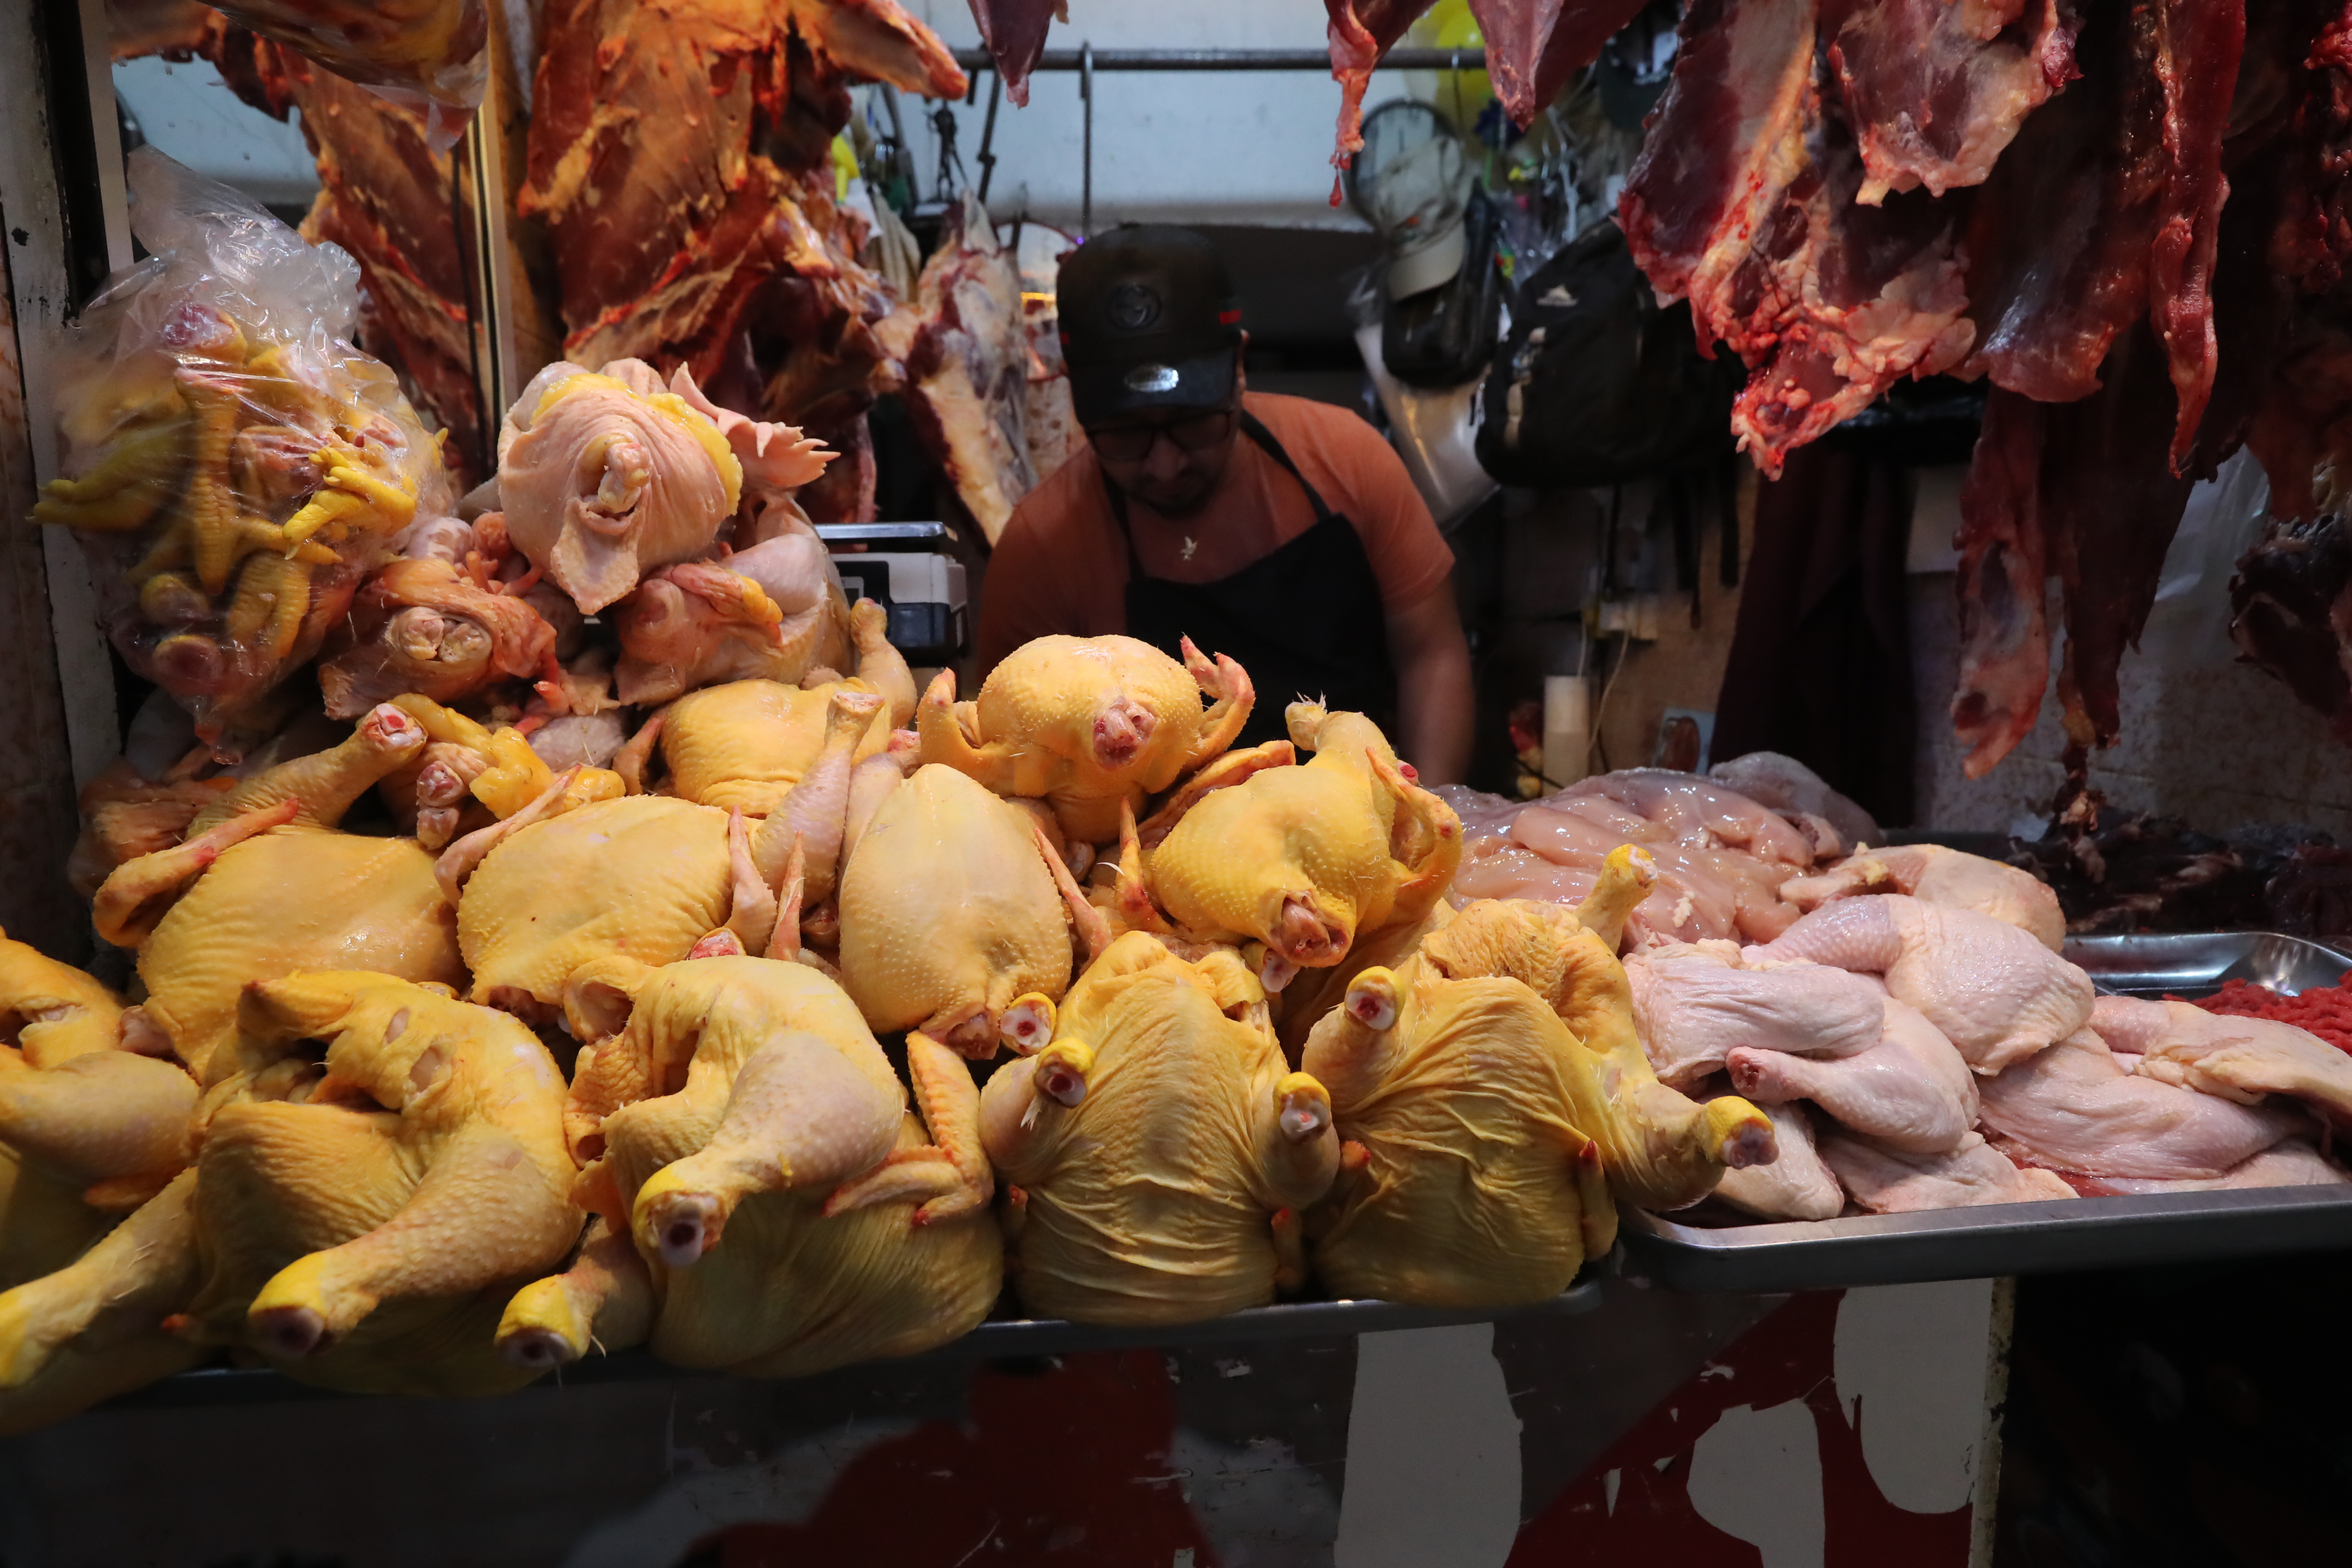 A pesar de la alerta sanitaria emitida por el Ministerio de Salud por la gripe aviar, guatemaltecos continan buscando este producto para su consumo.

Indican que lo hacen por el precio menor comparado con otras carnes y porque confan en el manejo de la carne por parte de las avcolas.

En imagen, guatemaltecos compran pollo en el mercado central.